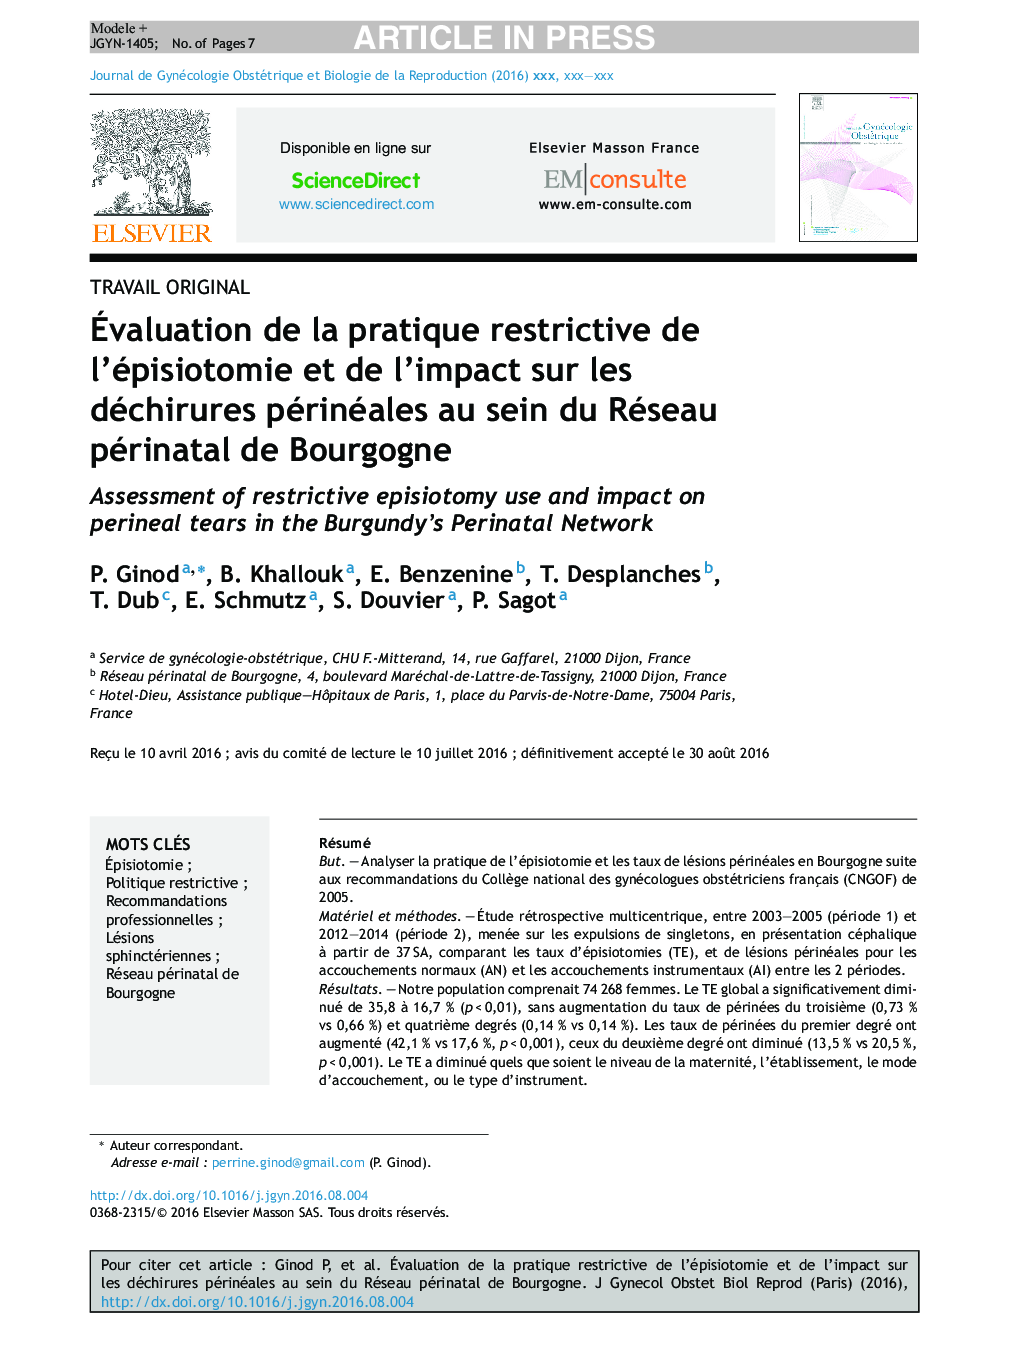 Ãvaluation de la pratique restrictive de l'épisiotomie et de l'impact sur les déchirures périnéales au sein du Réseau périnatal de Bourgogne